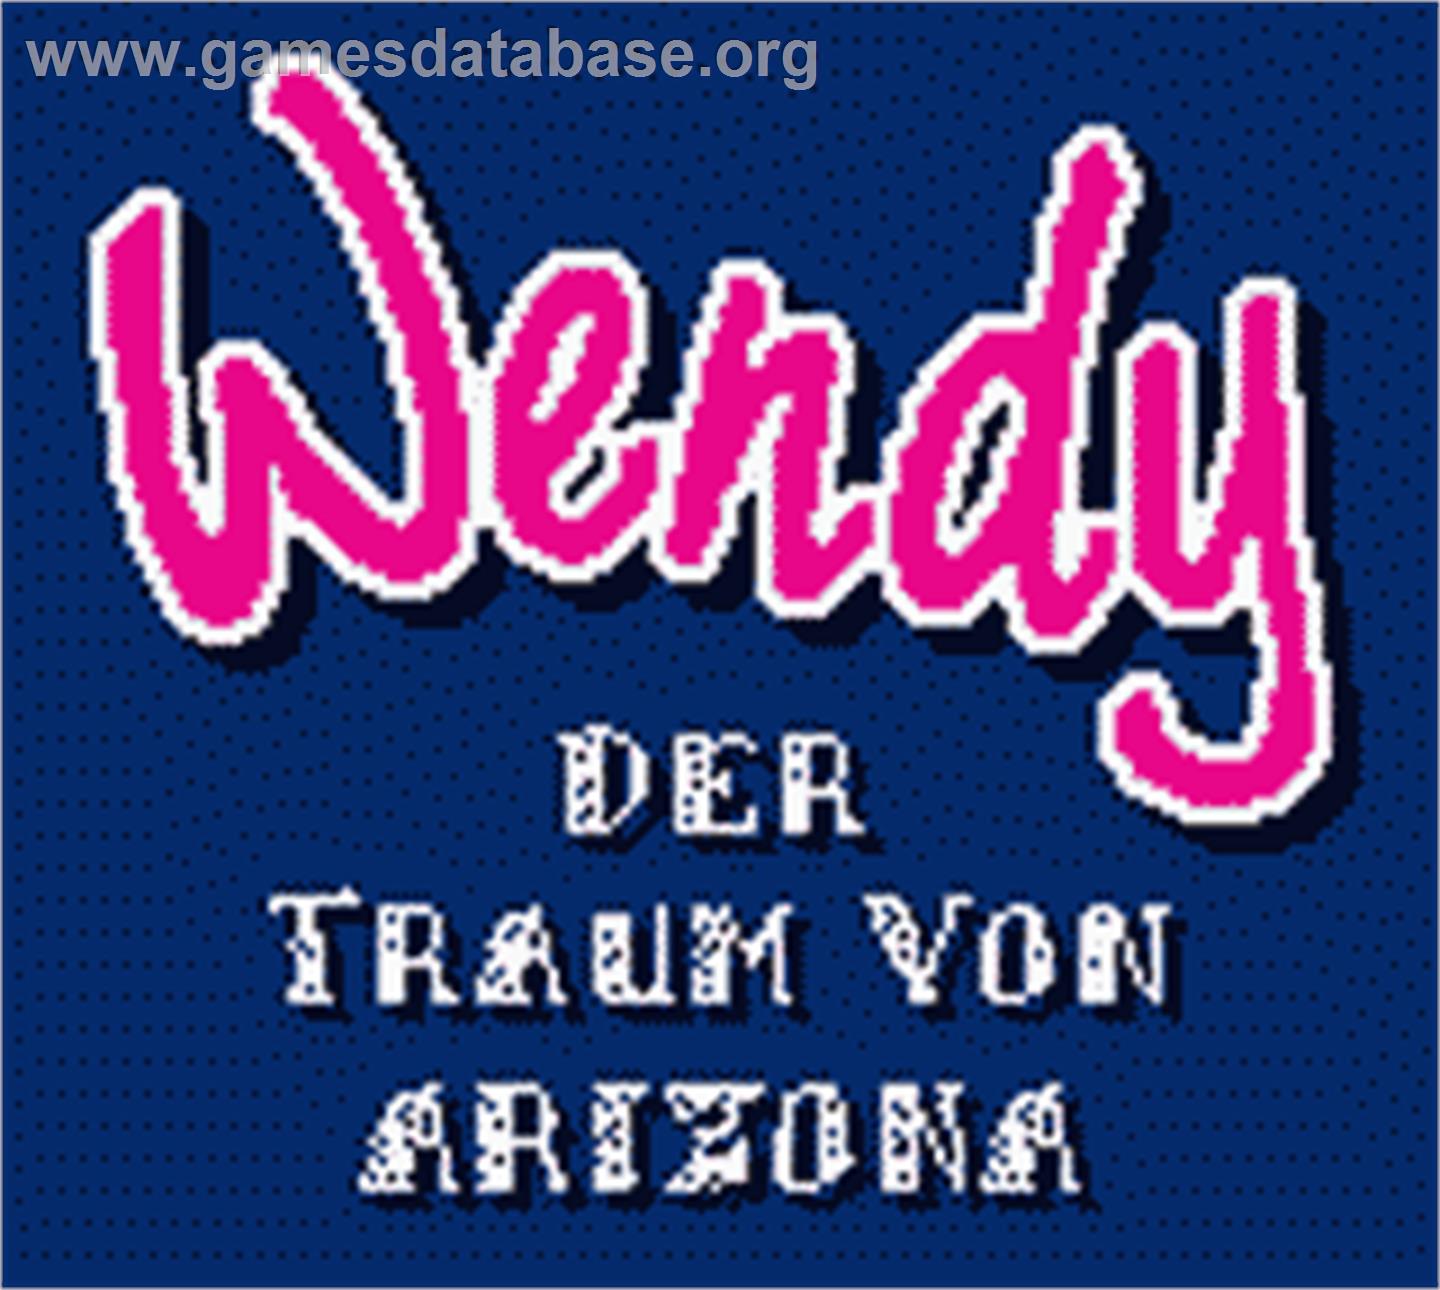 Wendy: Der Traum von Arizona - Nintendo Game Boy Color - Artwork - Title Screen